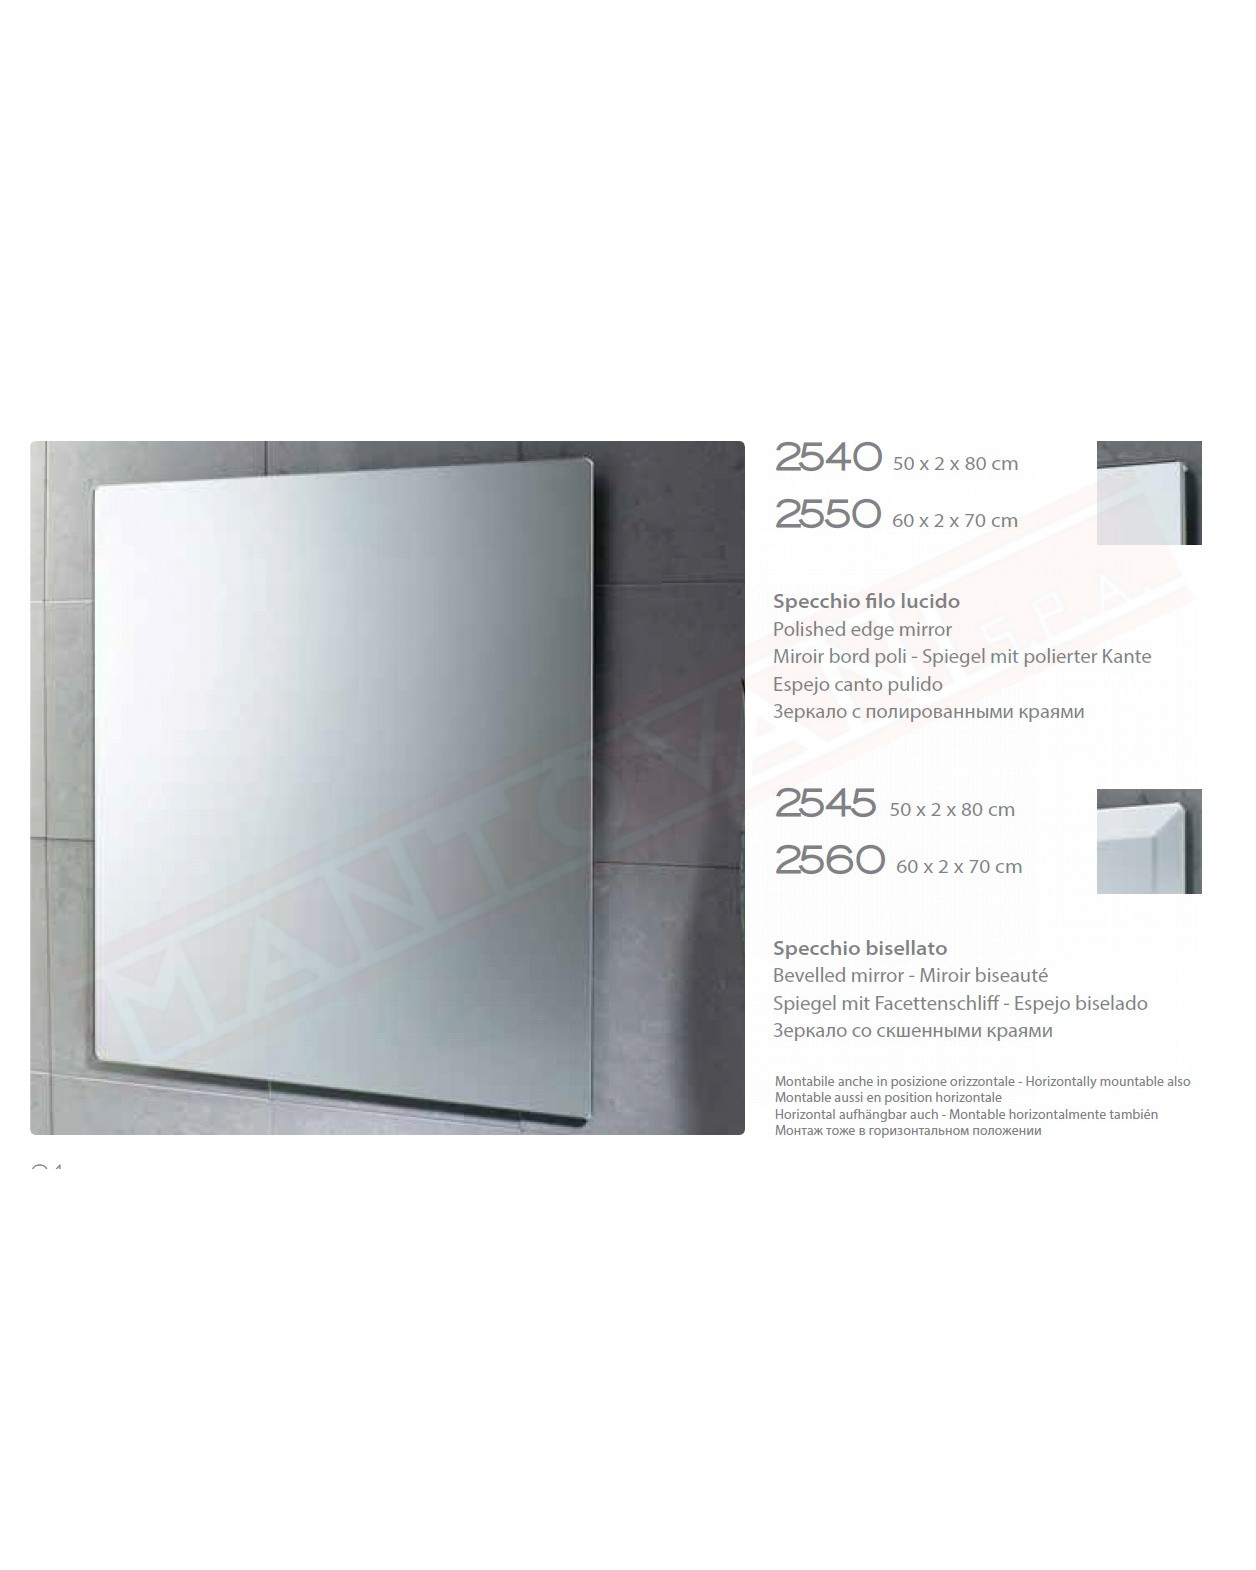 Gedy specchio bagno bisellato 60x70 reversibile misure art 60x2x70